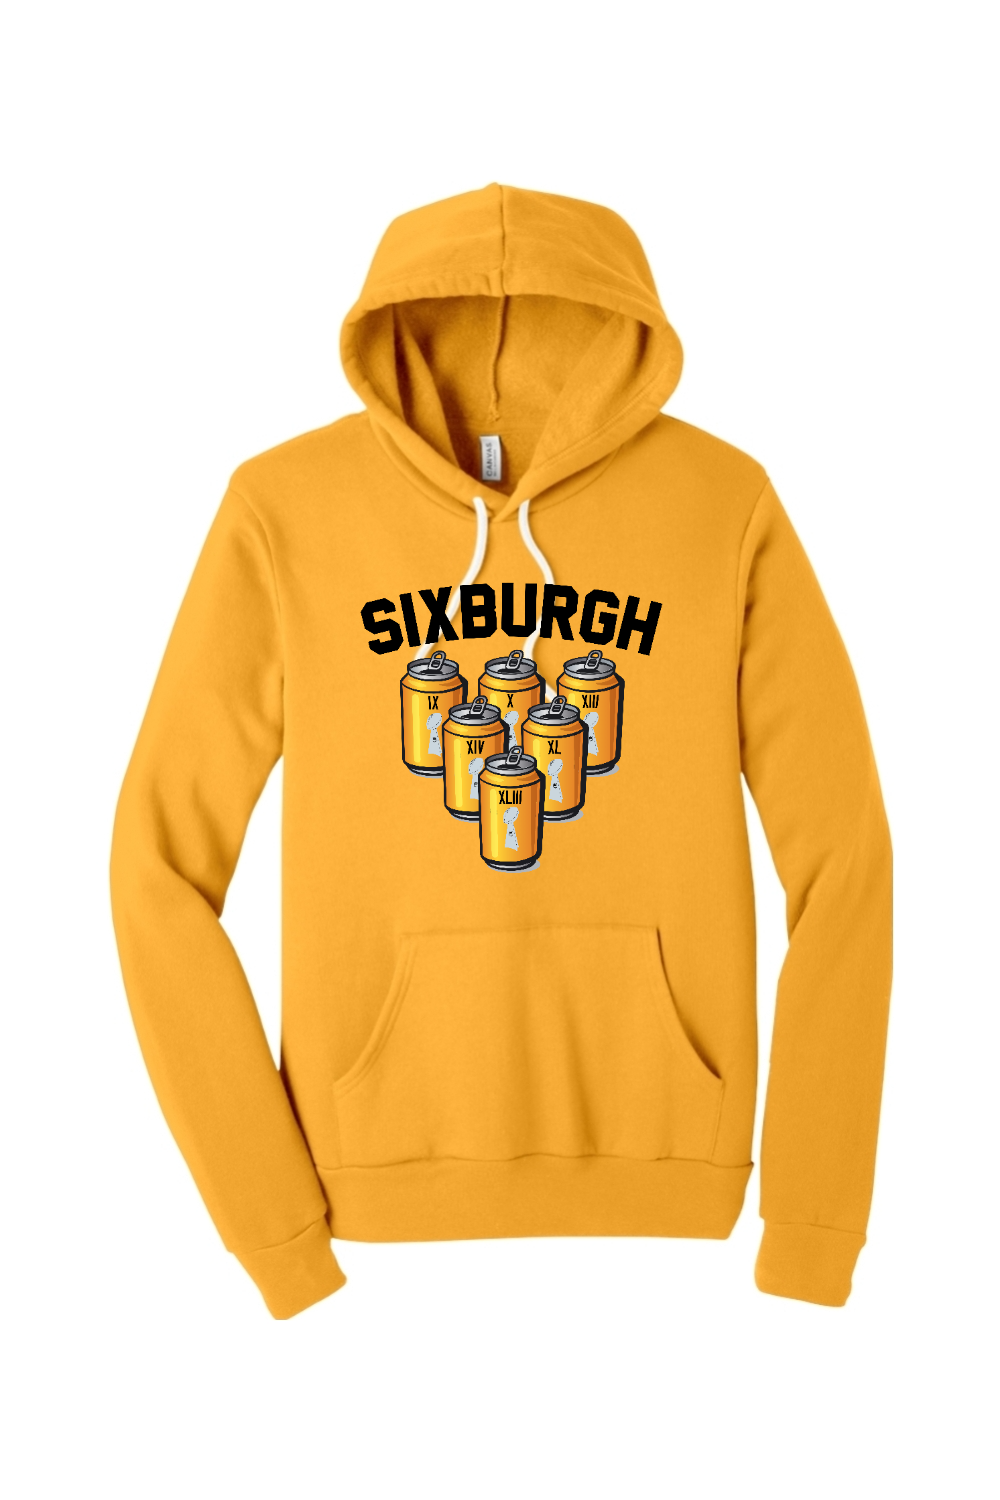 Sixburgh - Premium Sponge Fleece Hoodie - Yinzylvania